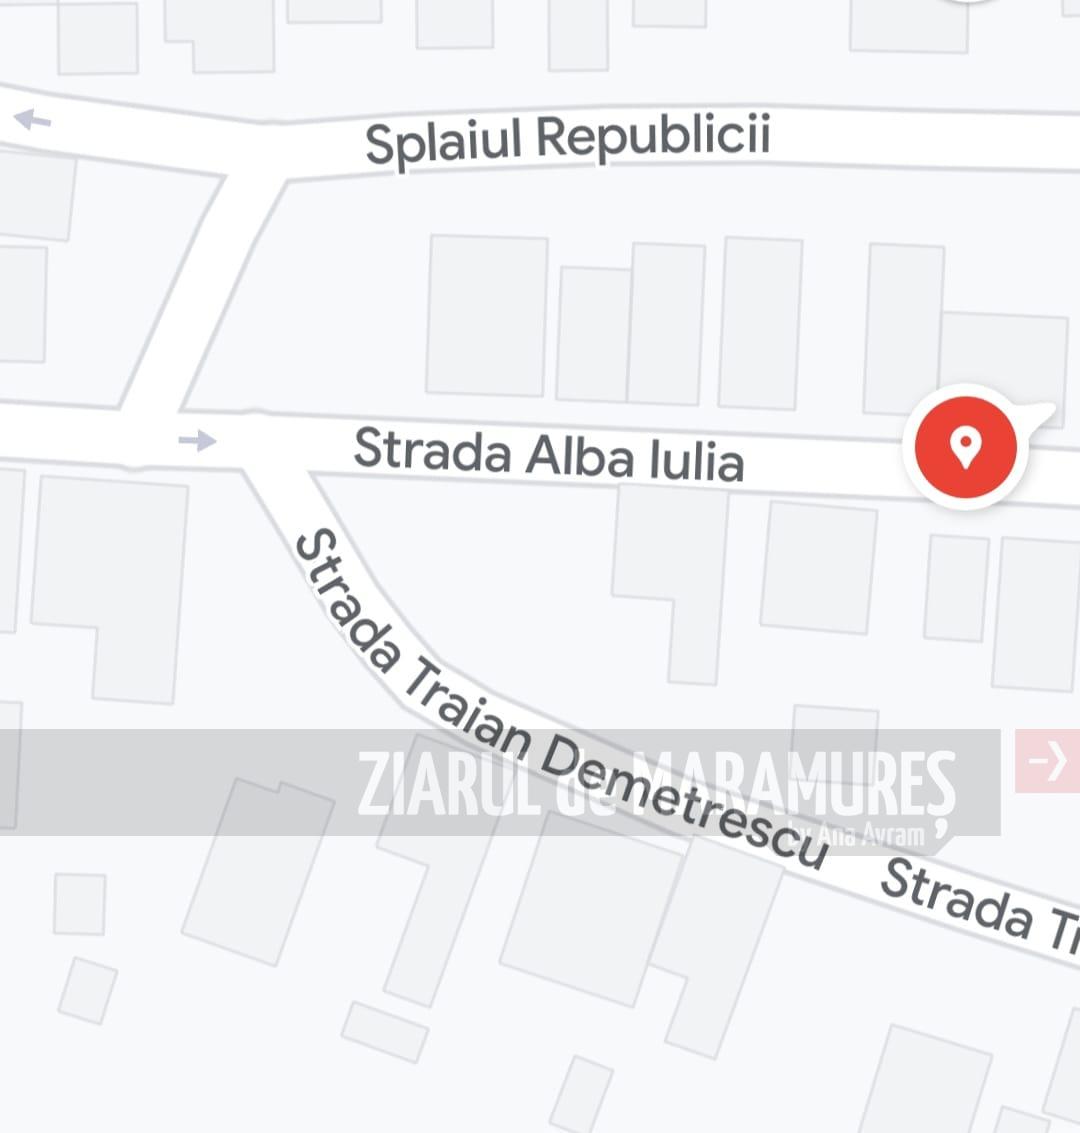 ANUNȚ. S-a închis Splaiul Republicii, de la intersecția cu str. Griviței până la intersecția cu str. Alba Iulia, Baia Mare